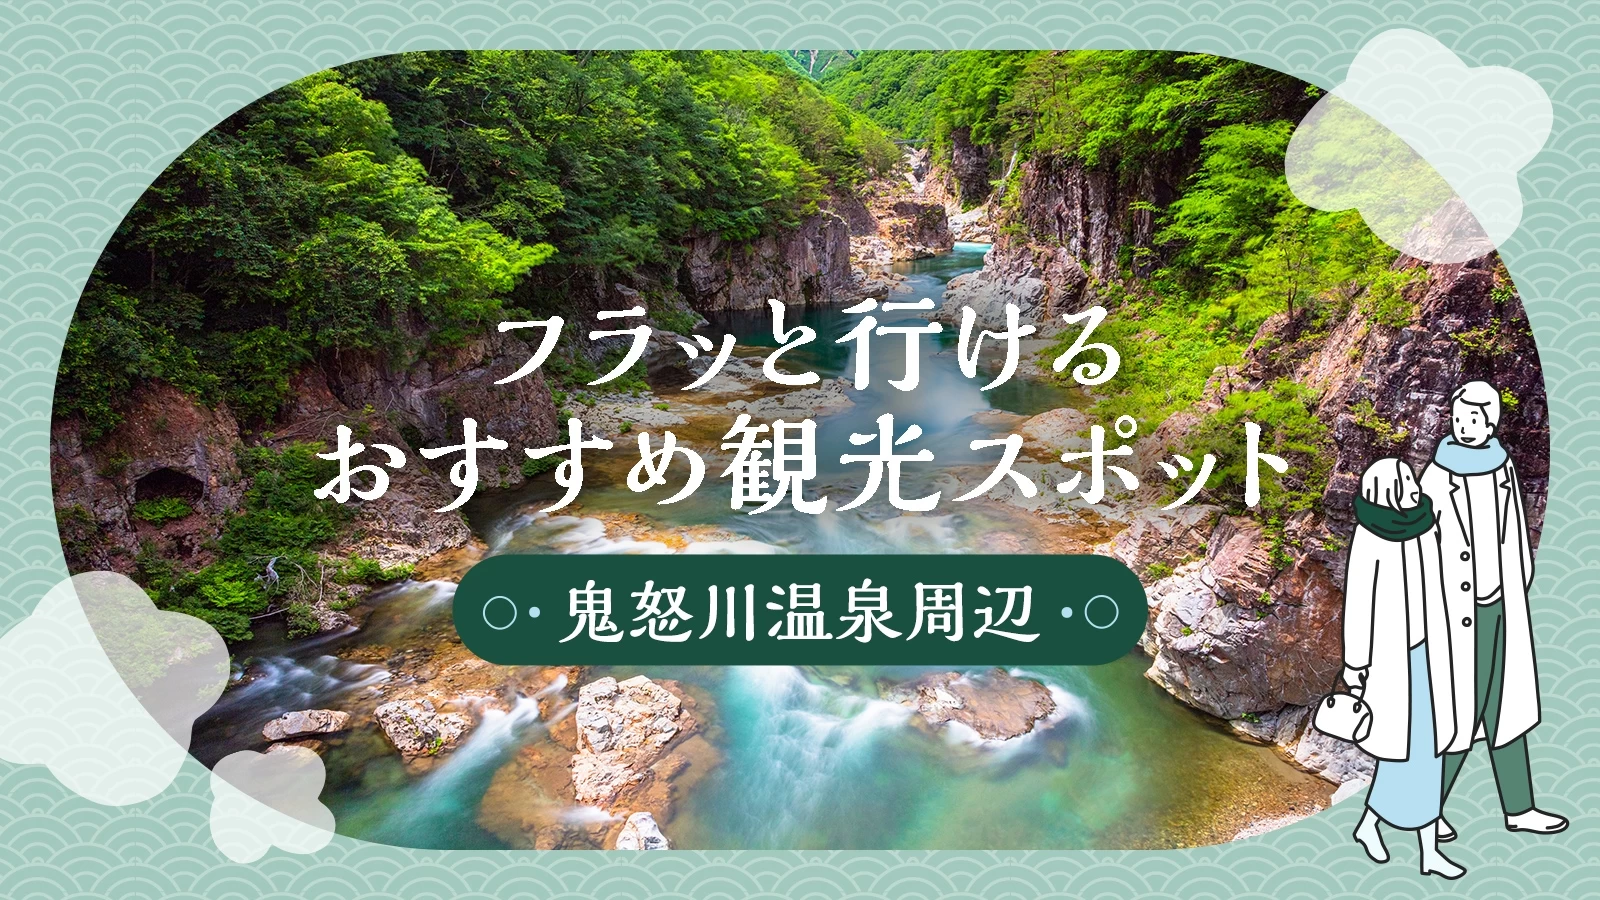 【鬼怒川温泉周辺観光】ここに行くべき！フラッと行けるおすすめスポット14選